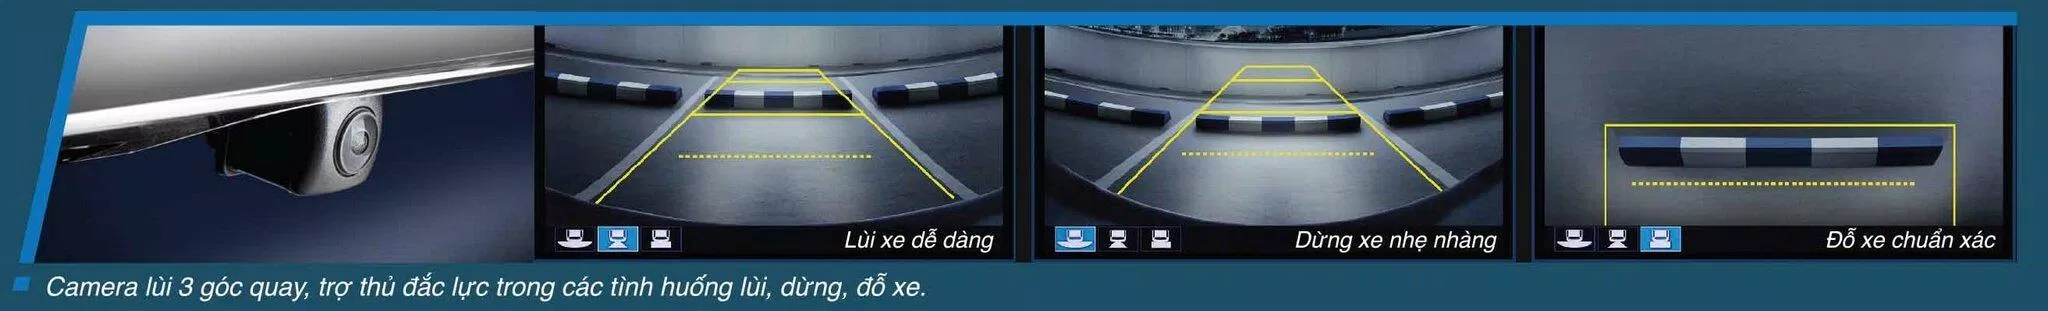 Hệ thống camera lùi 3 góc quay của xe Honda City 2019 giúp bạn đỗ xe an toàn và dễ dàng (ảnh : Honda Vietnam)